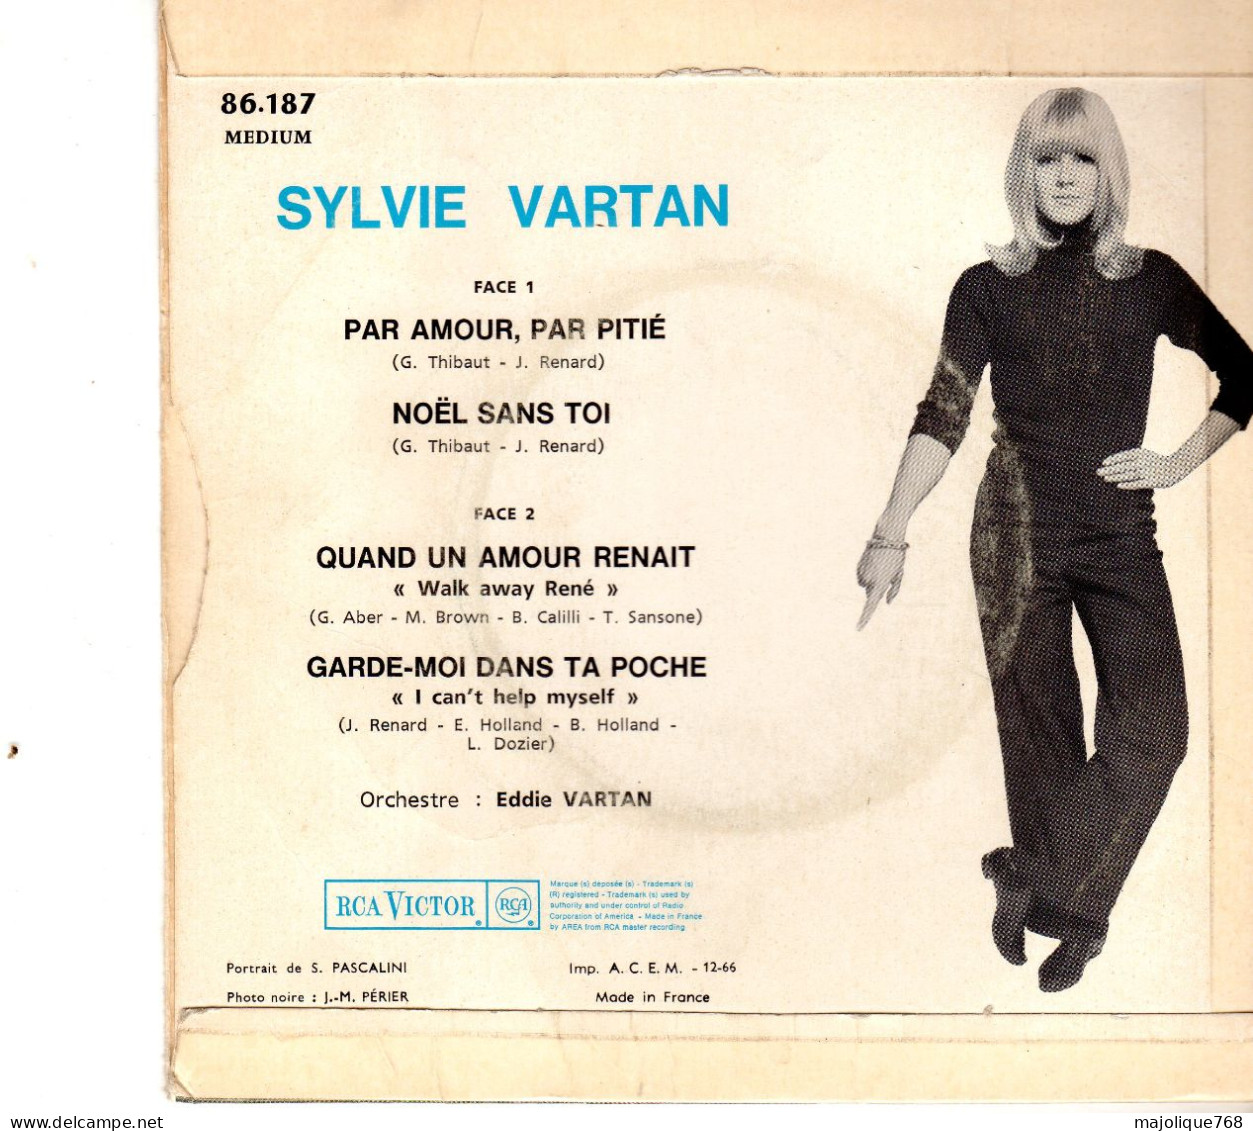 Disque 45T - De Sylvie Vartan - Par Amour, Par Pitié - RCA VICTOR 86.187 - France 1966 - - Soul - R&B